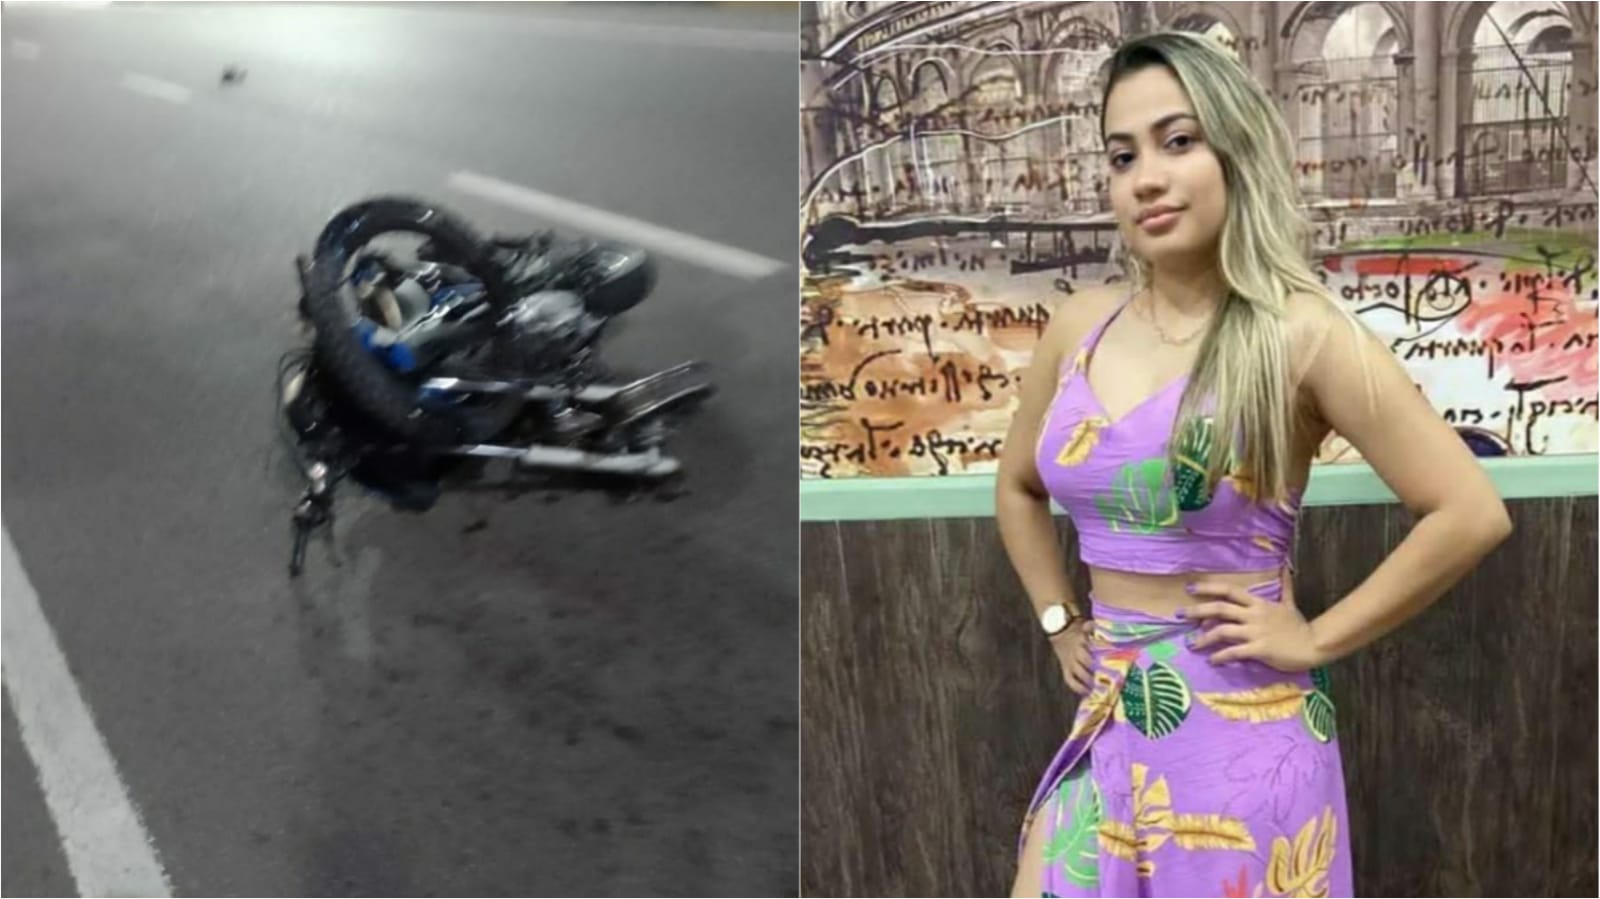 Adolescente sofre acidente de moto em Vicinal Iacri/ Bastos